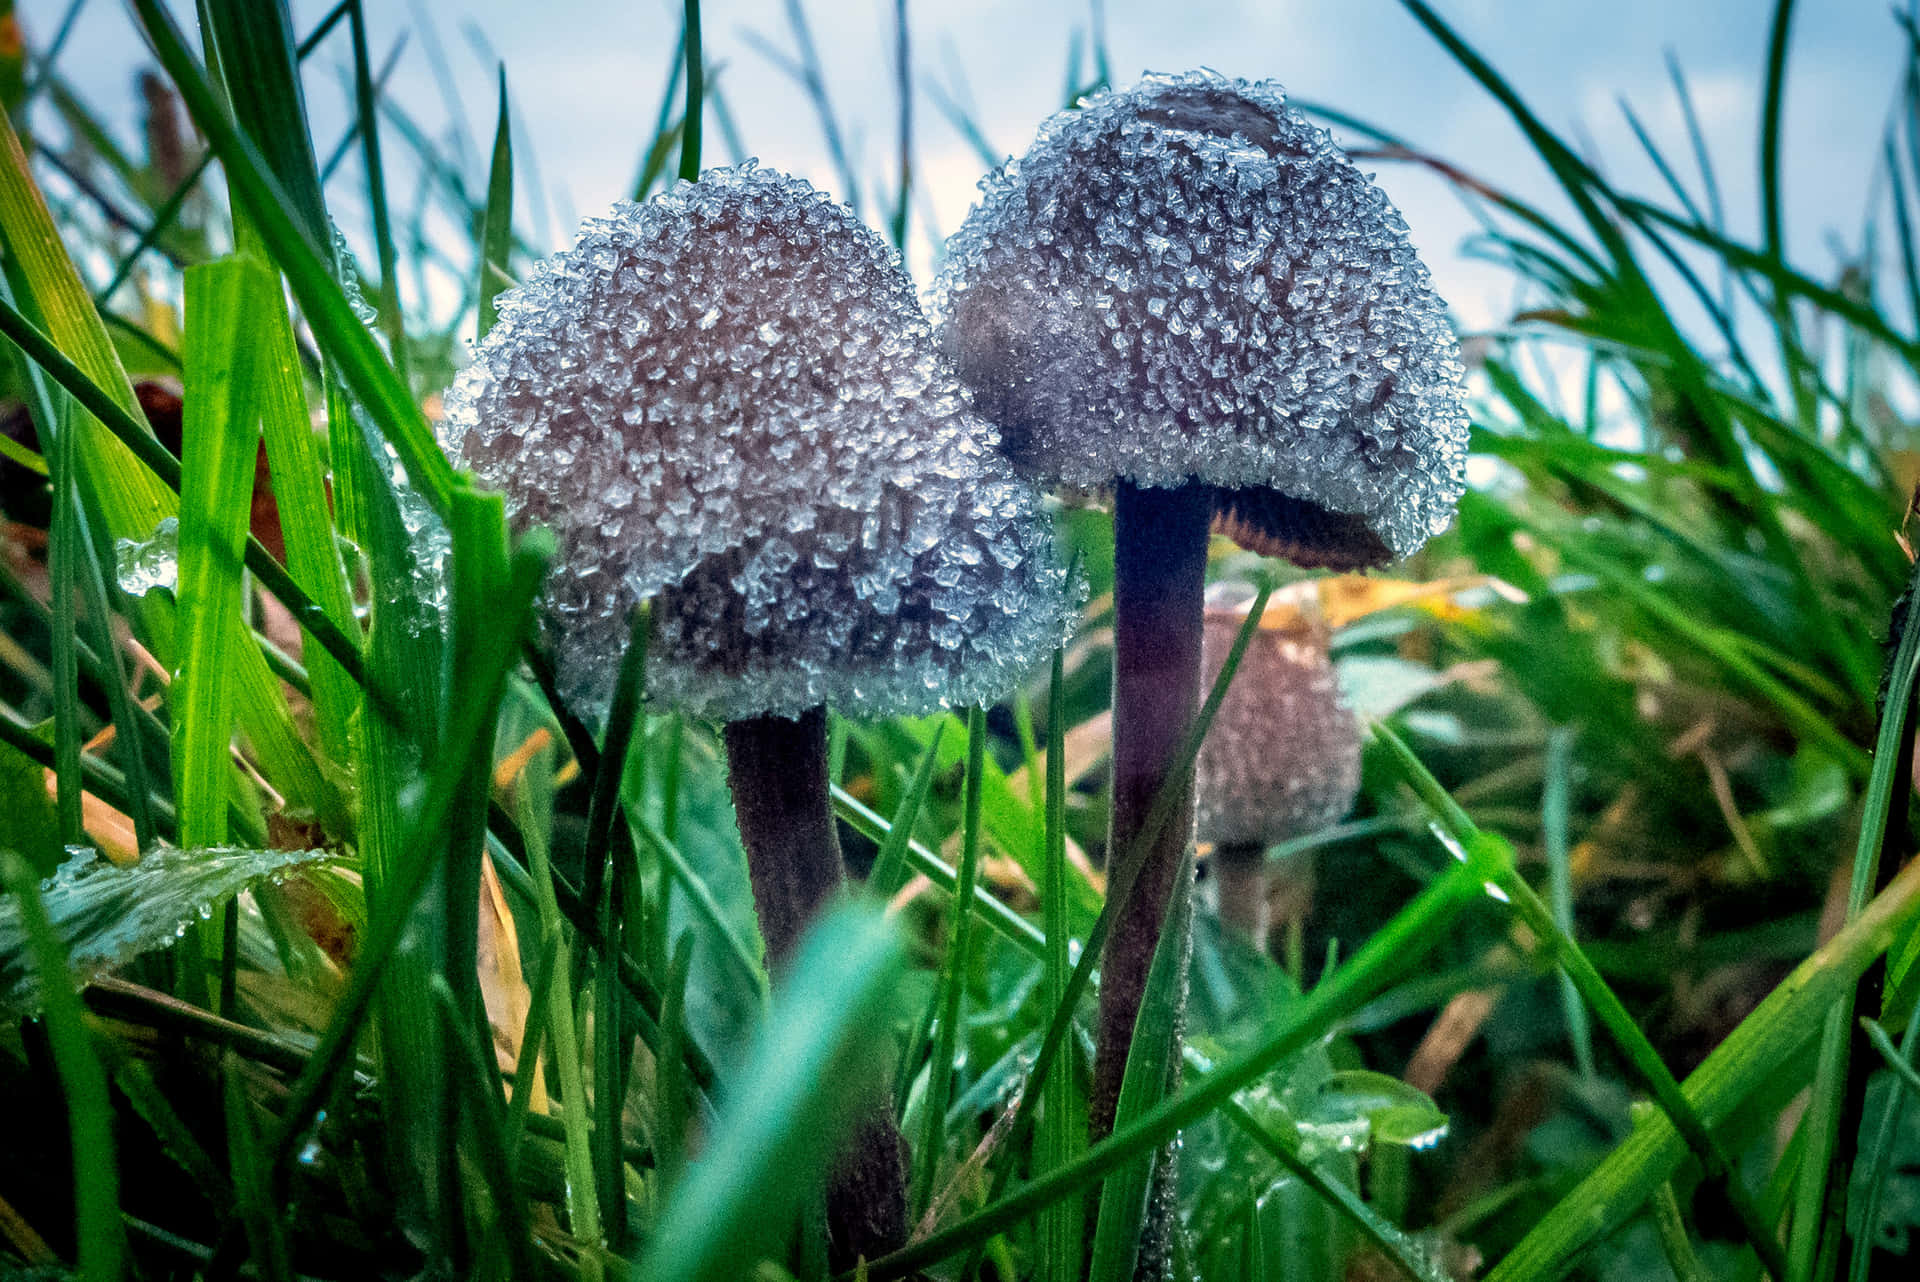 A Colorful Magical Mushroom